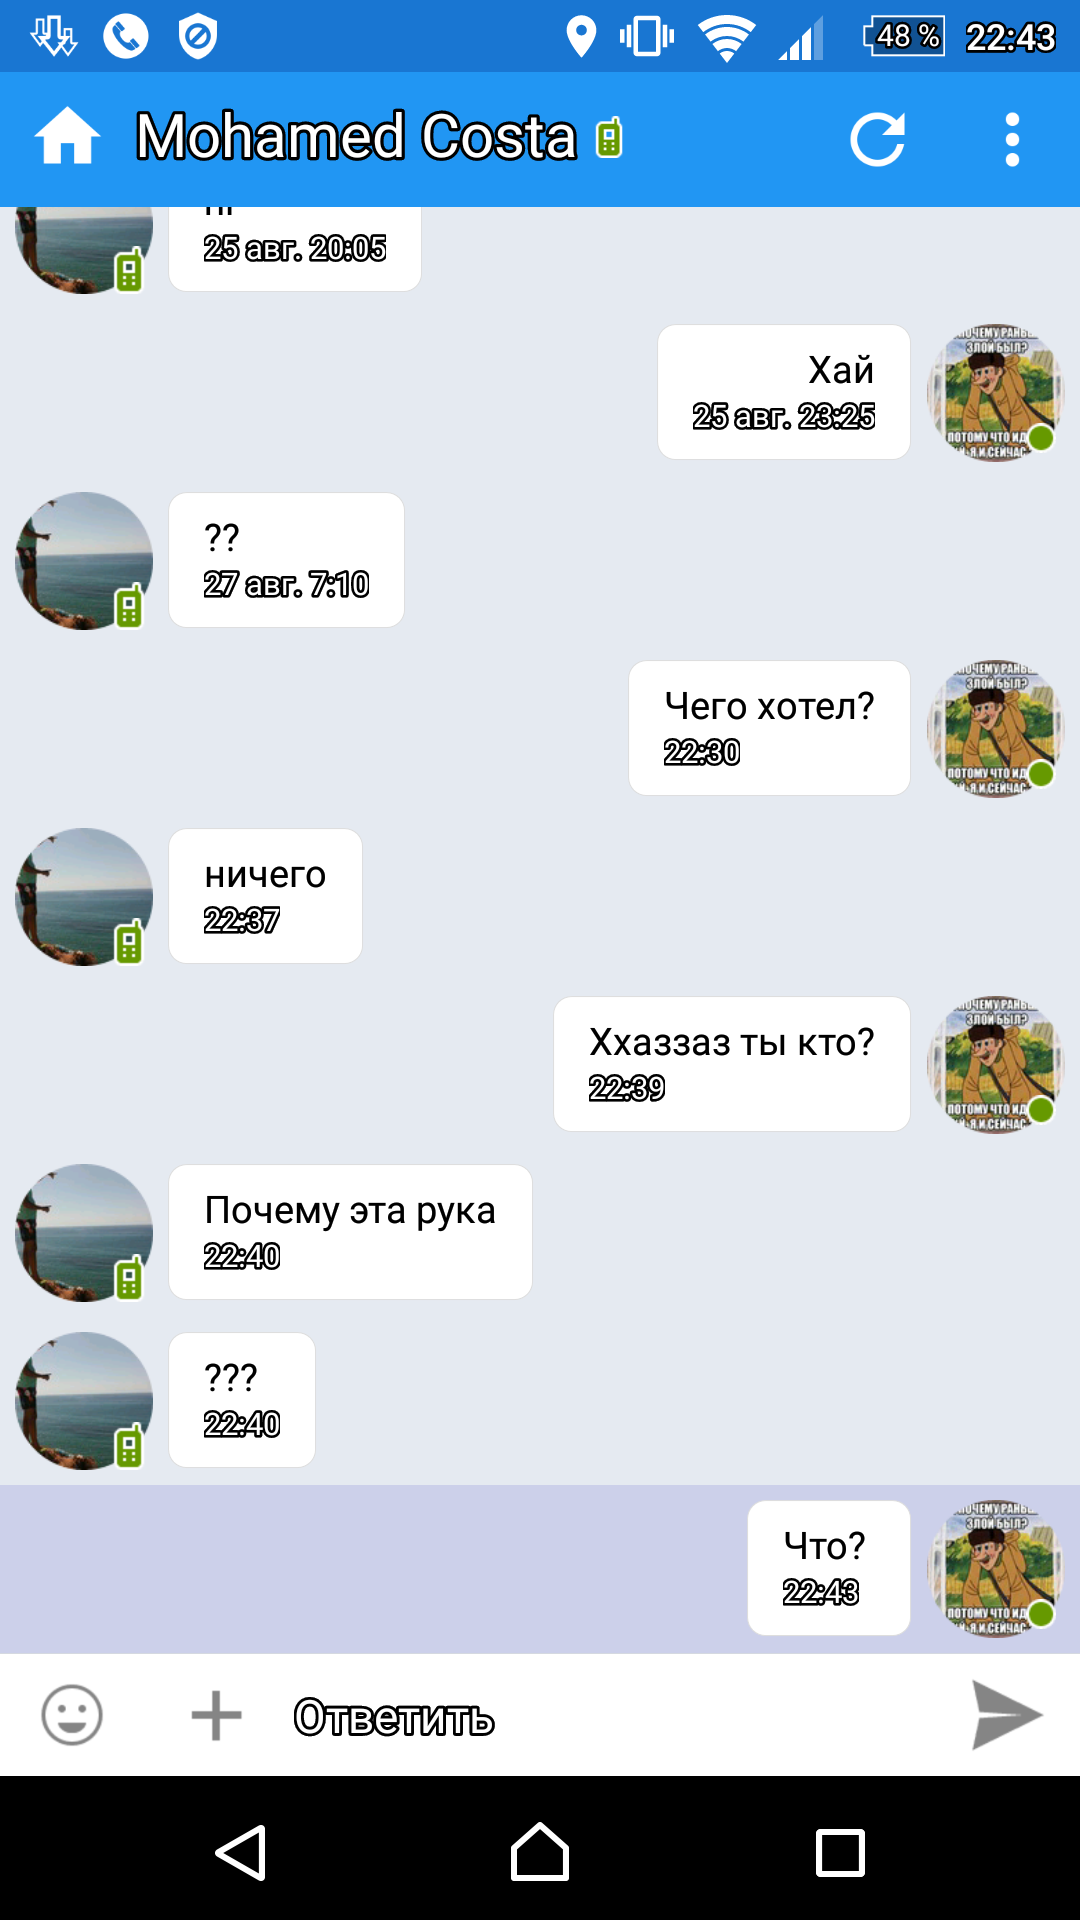 Саяногорск Инфо - screenshot_20160828-224352.png, Скачано: 521